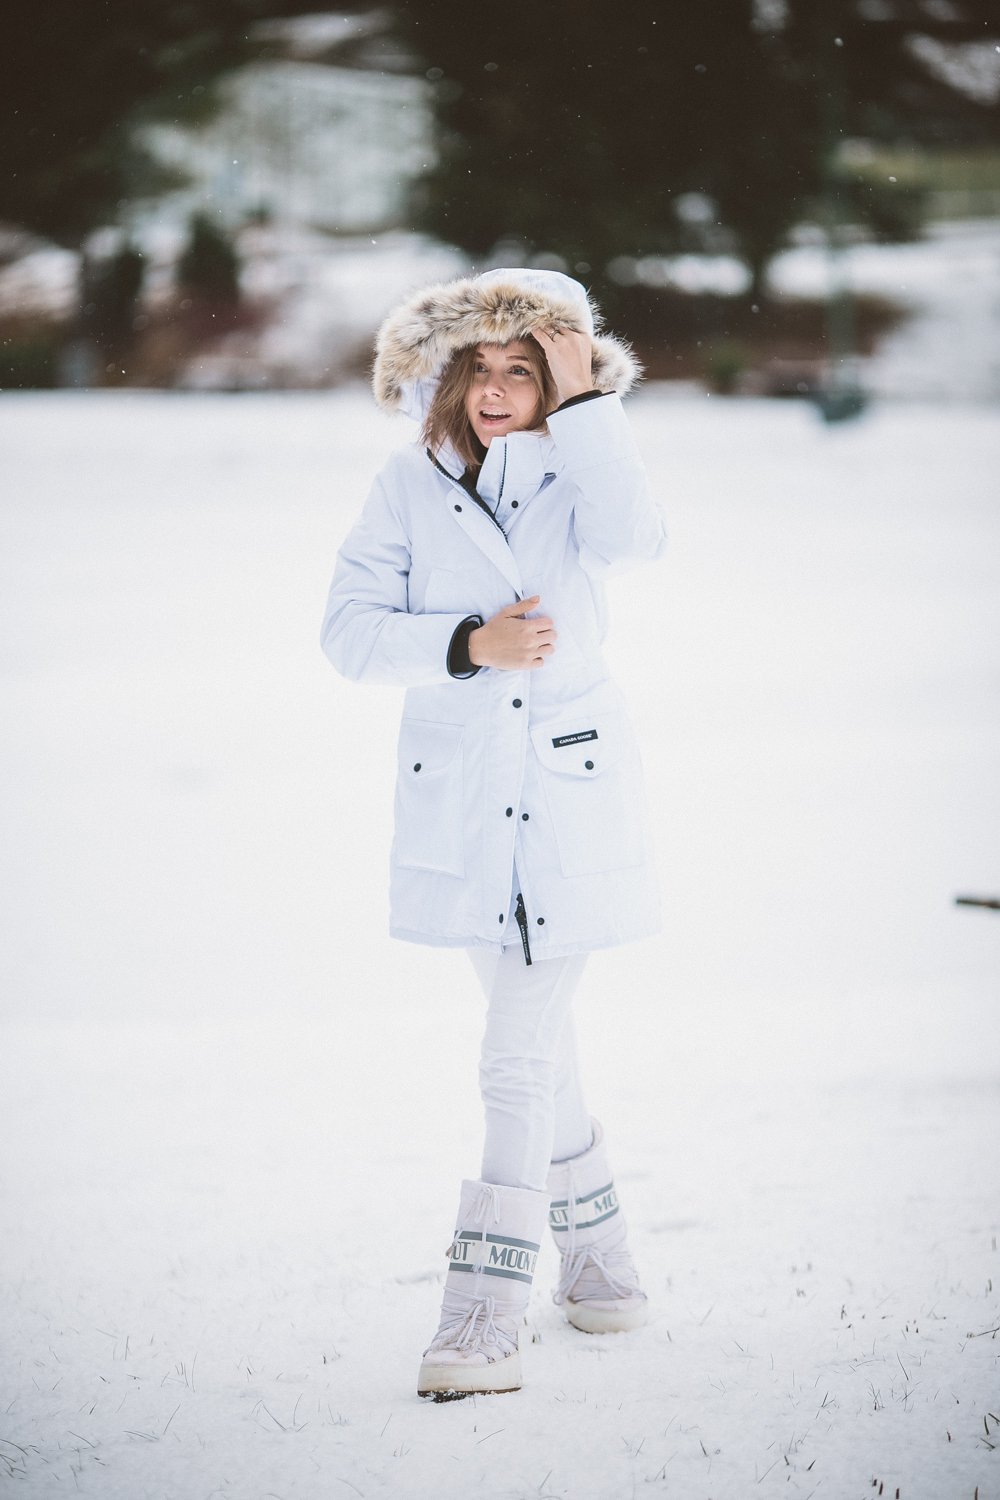 Гуляем с белой. Ботинки Канада Гус. Зимний образ для девушки. Девушка в белой куртке. Образы с белым пуховиком.